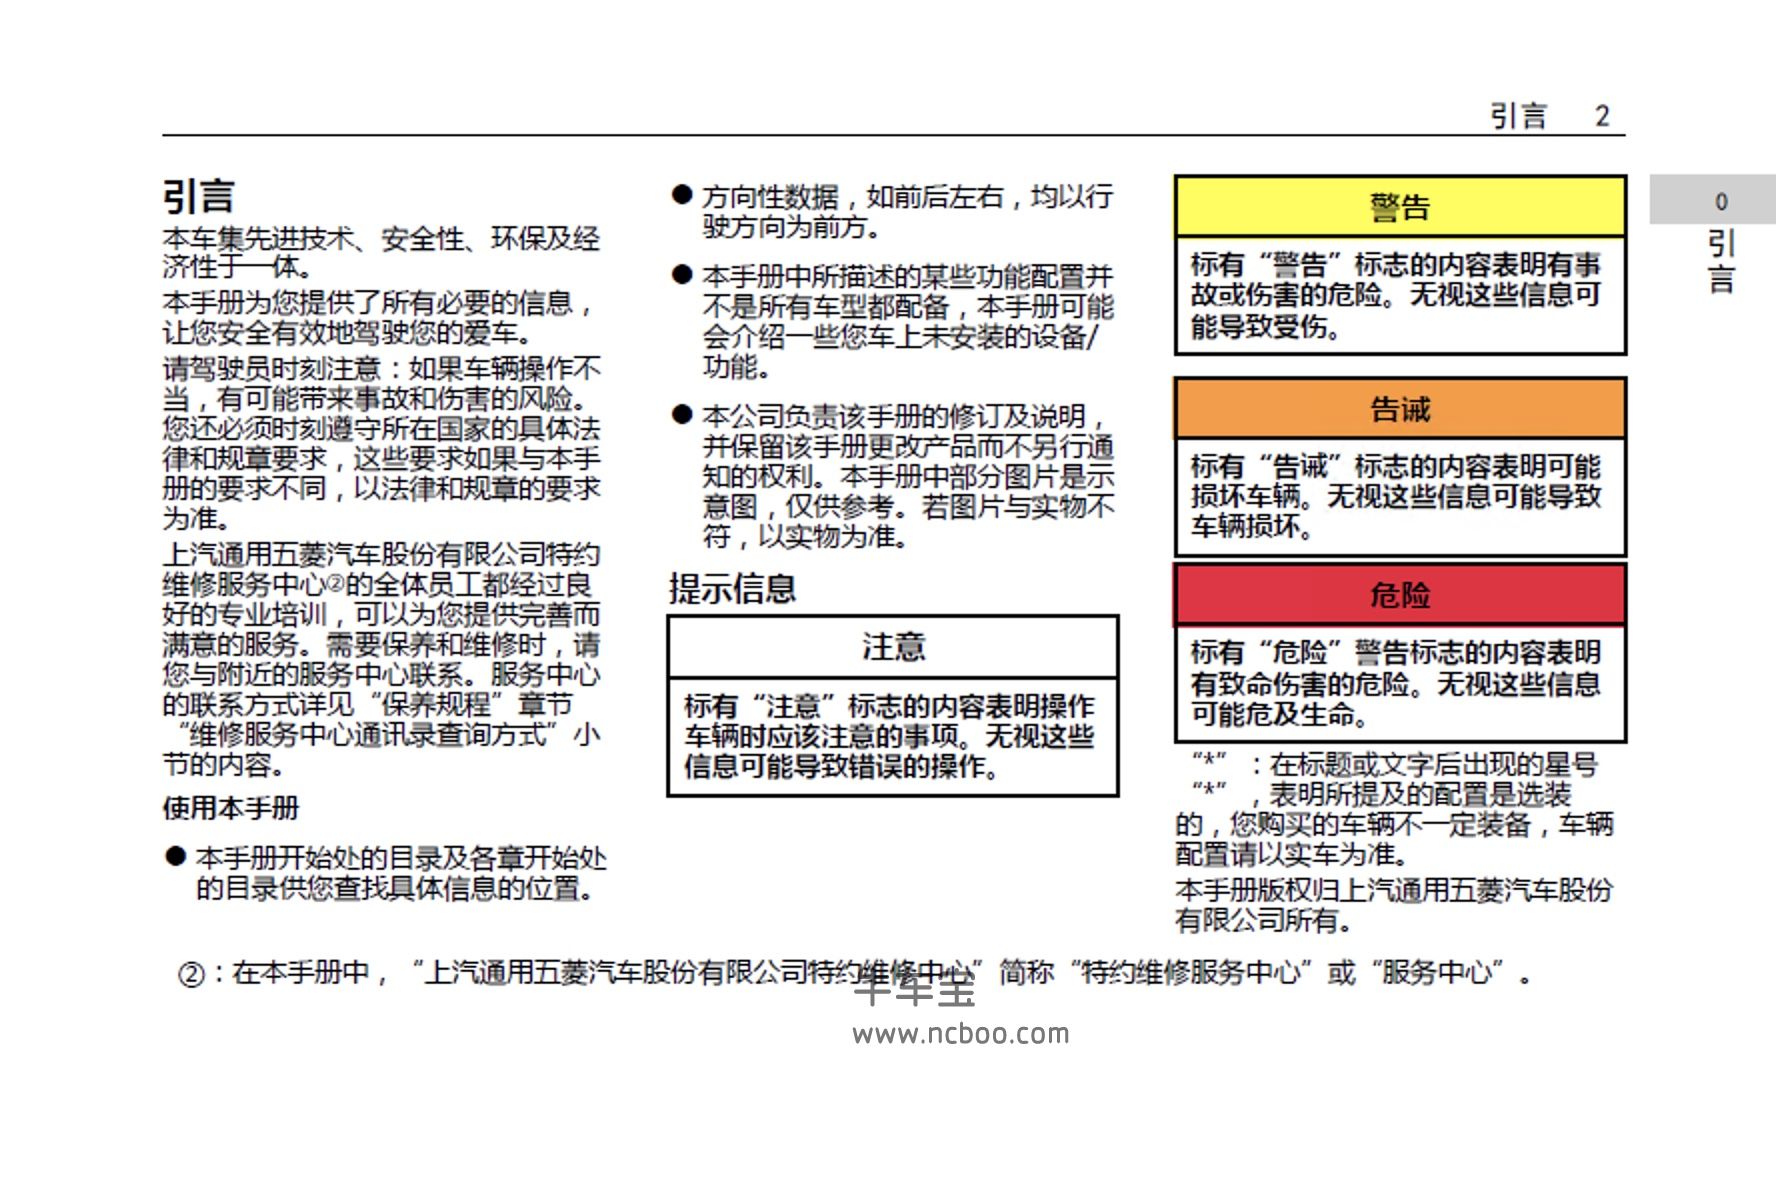 2019-2020款新宝骏RS-5产品使用说明书PDF电子版下载